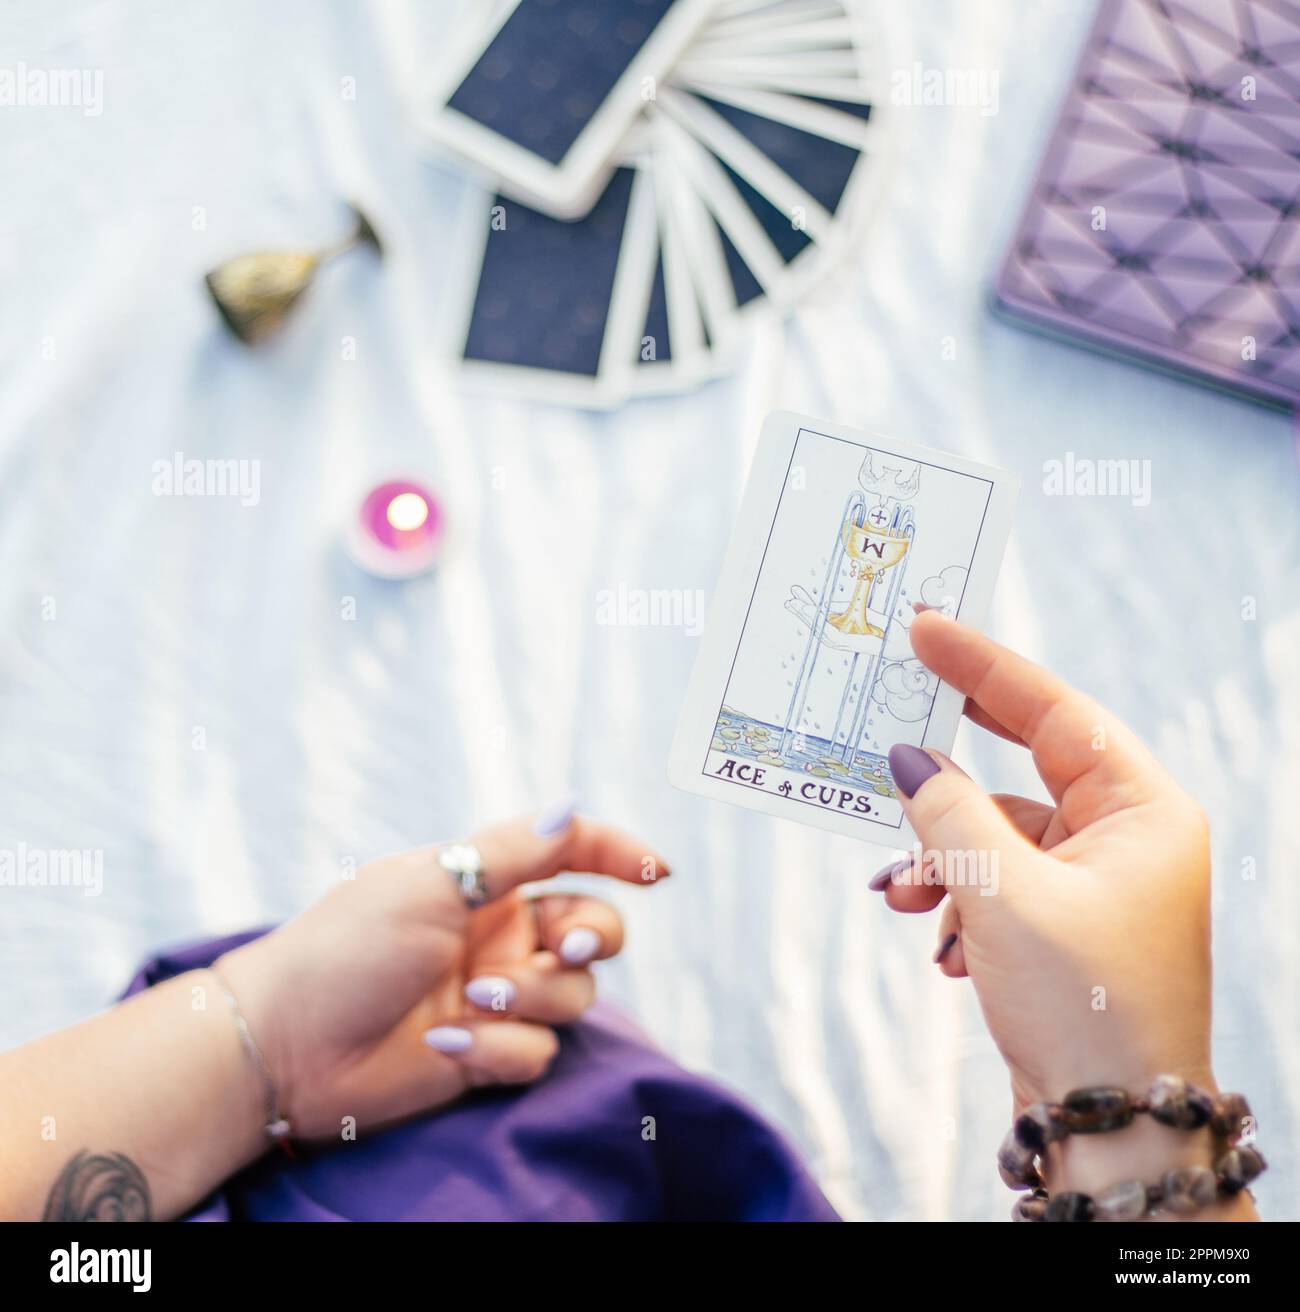 Eine weibliche Hand mit lila Nägeln hält eine Tarotkarte mit dem Namen „Ace of Cups“ auf einer weißen Oberfläche mit Notizbuch und Kerze. Draufsicht. Stockfoto